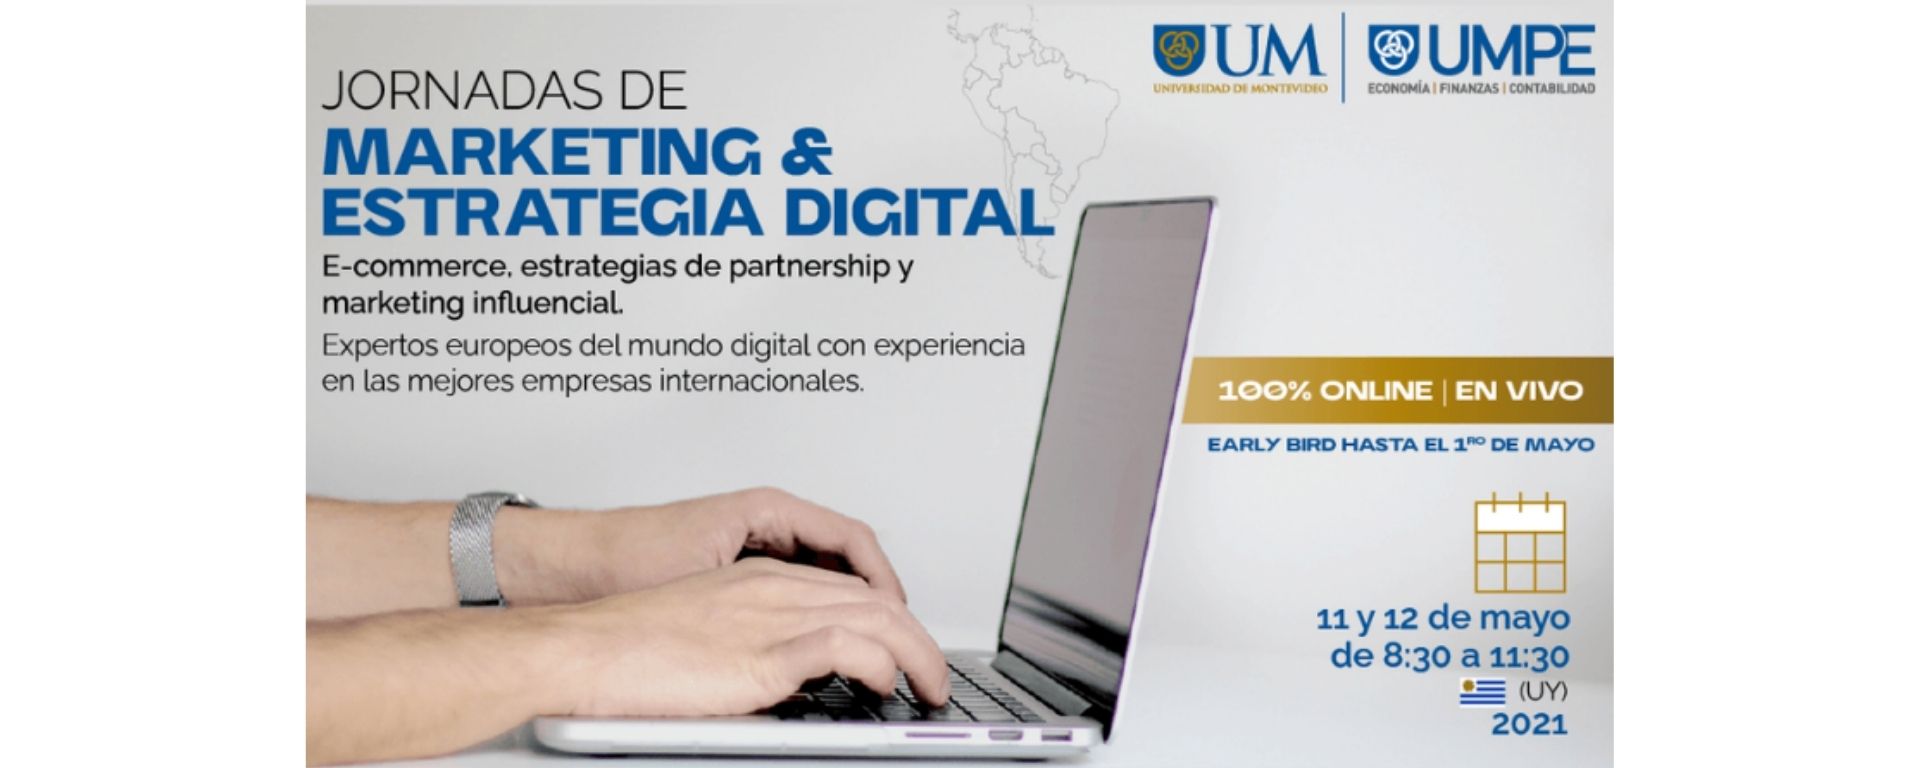 Jornadas de Marketing y Estrategia Digital UMPE 2021